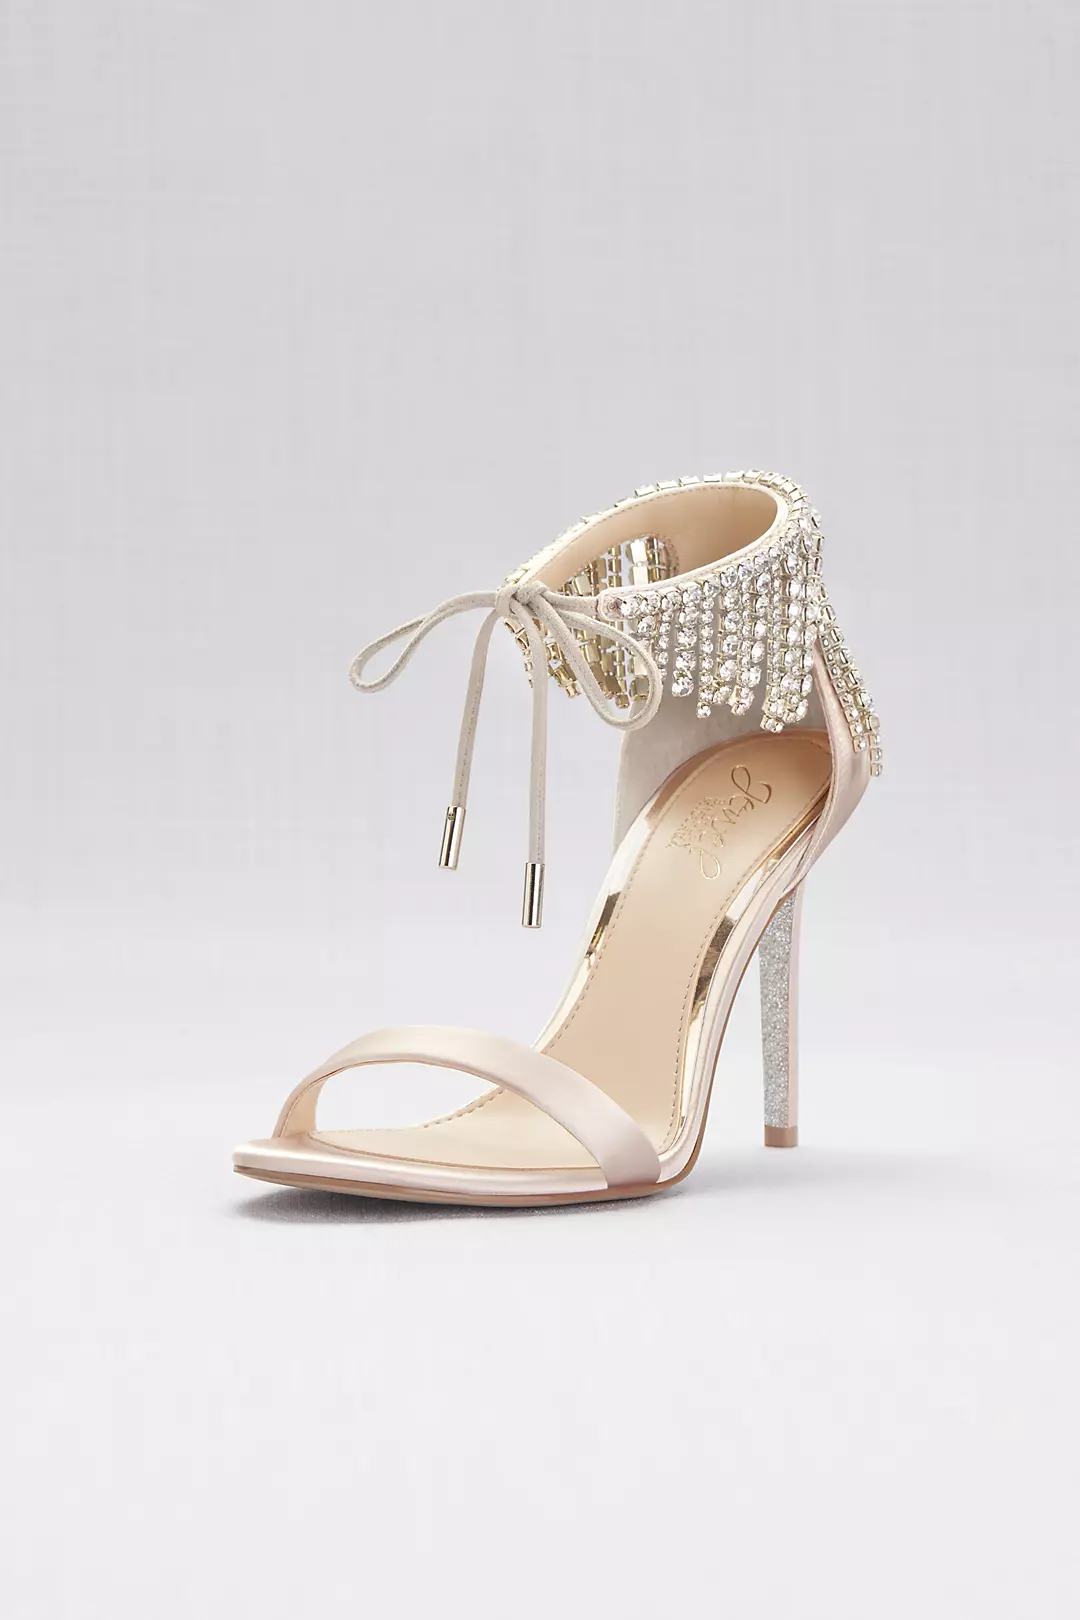 Crystal Fringe Strap High Heel Sandals Image